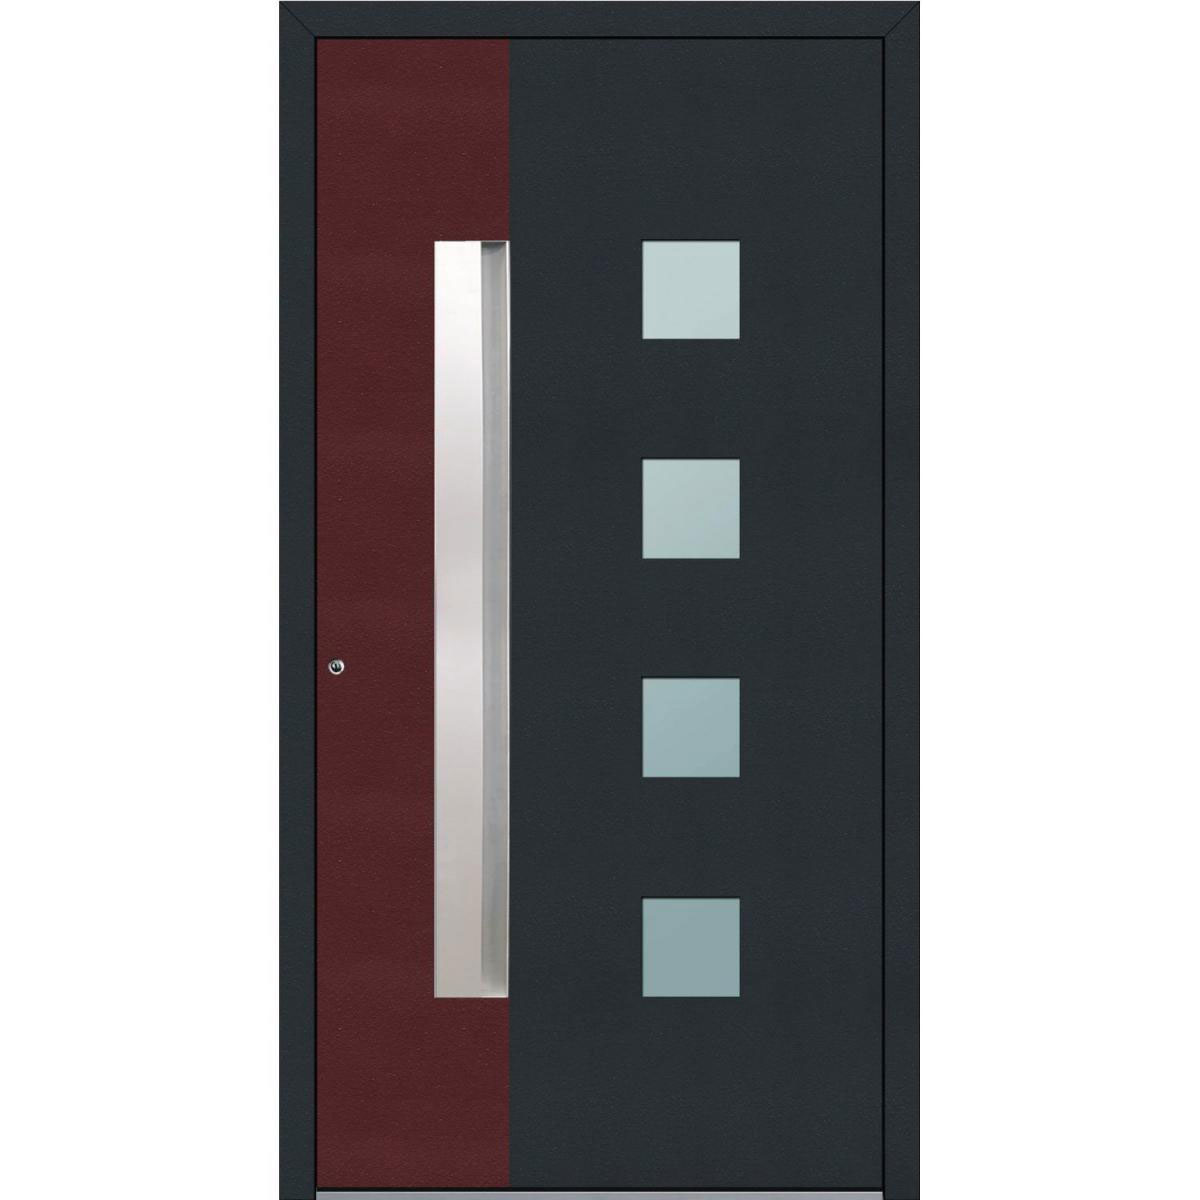 Aluminium Sicherheits-Haustür „Genua Exklusiv“, 75 mm, anthrazit mit rot, 110x210 cm, Anschlag links, inkl. Griffleiste